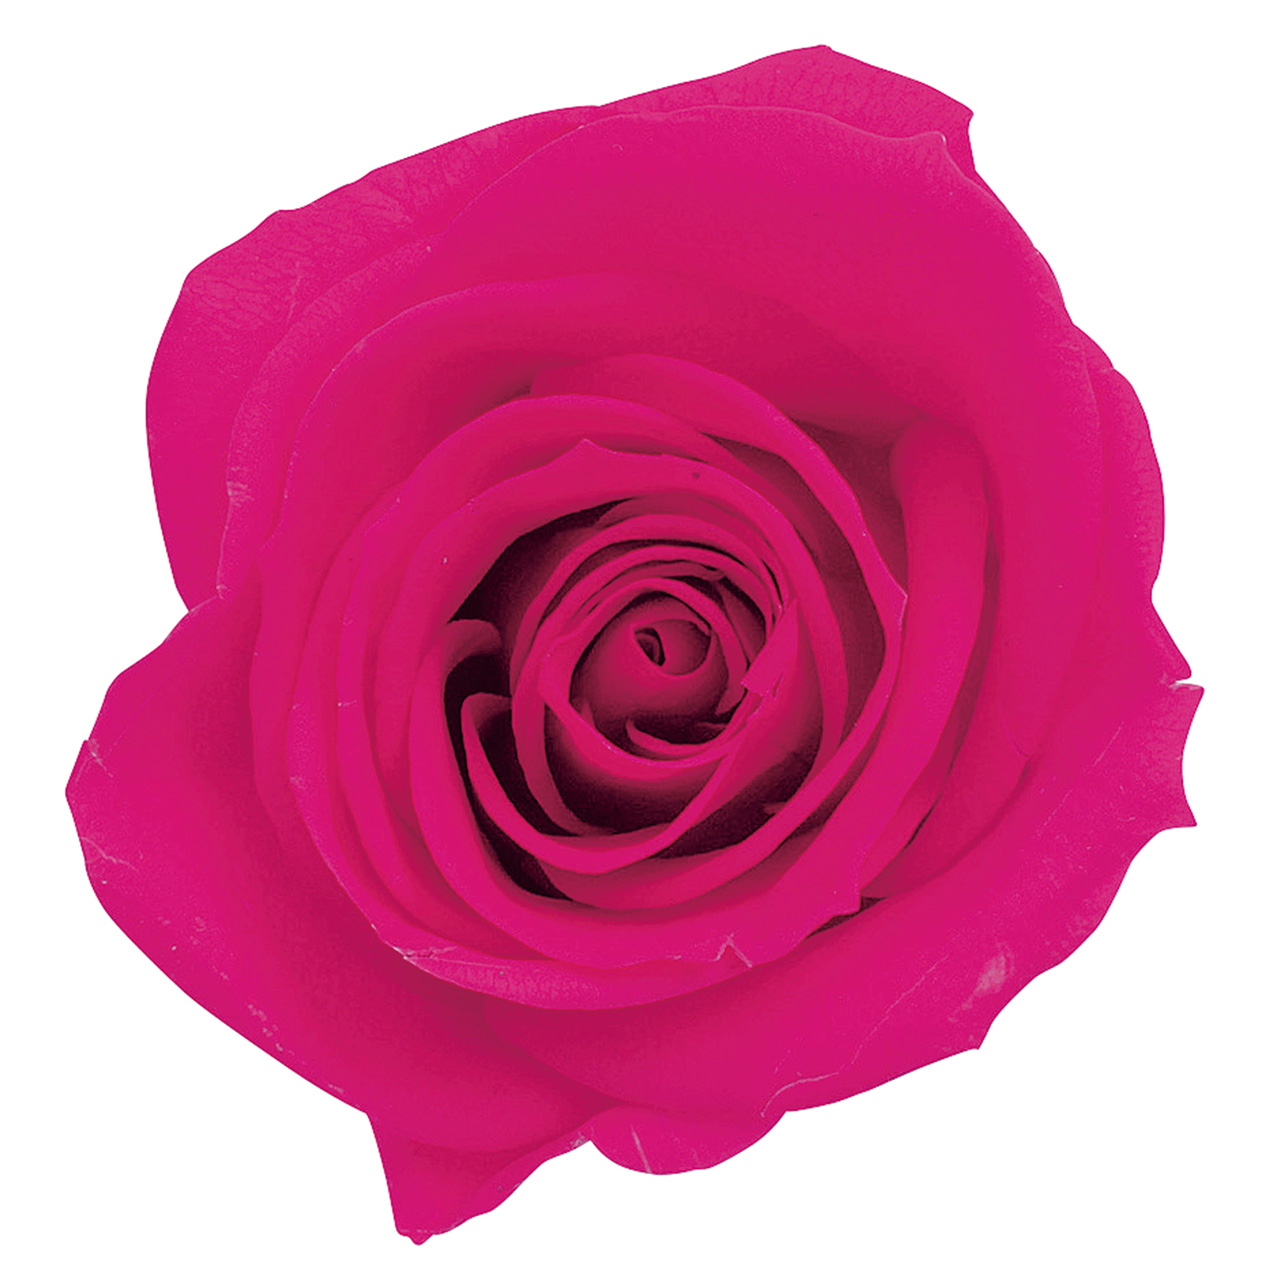 マイフラ】 通販/大地農園 ローズ・いずみ・カラーアソート ピンクミックス プリザーブドフラワー DO003484-110 9輪入 バラ(ピンクミックス):  プリザーブドフラワー/全国にMAGIQ、花器、花資材などをお届けします。